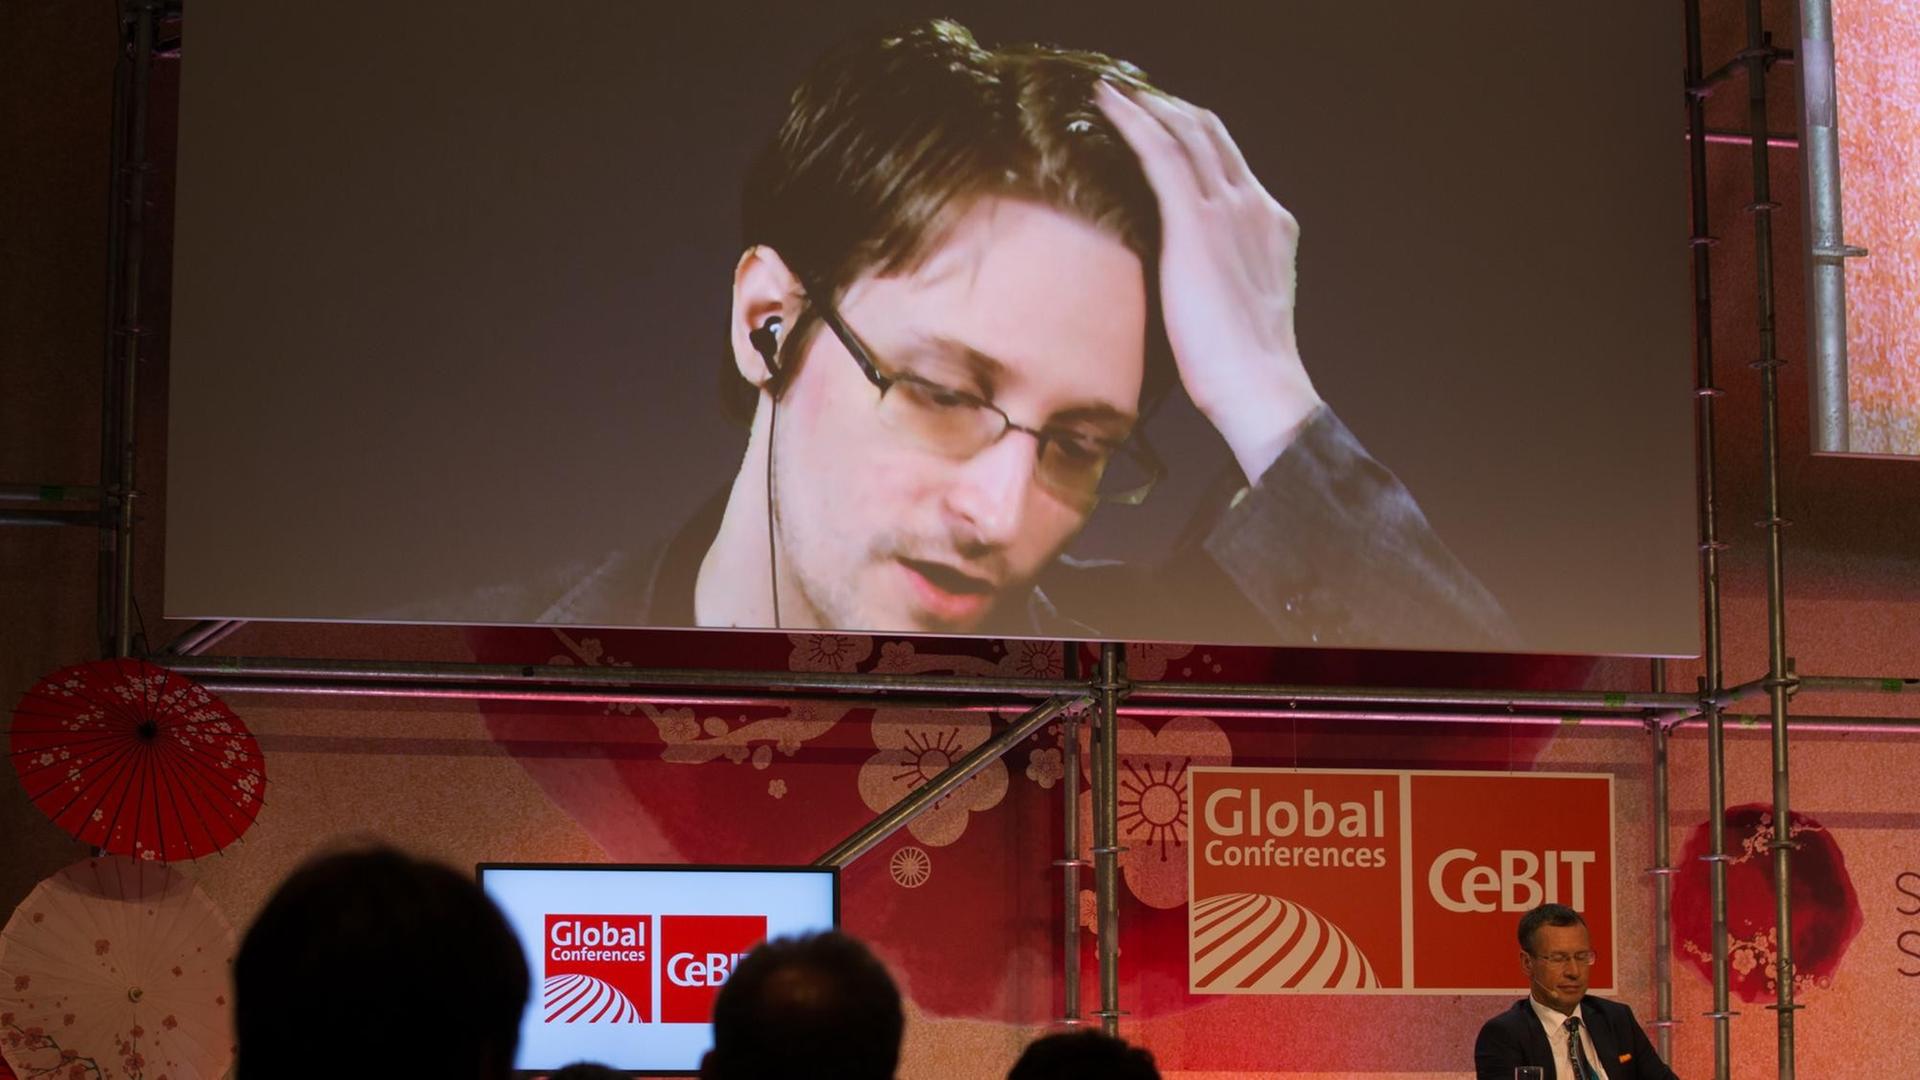 Der US-amerikanische Whistleblower und ehemalige CIA-Mitarbeiter Edward Snowden spricht am 21.03.2017 bei der IT-Messe CeBIT in Hannover (Niedersachsen) auf einer Videowand. Die IT-Messe CeBIT will ihr Fachpublikum mit konkreten Anwendungsbeispielen für neue Technologien überzeugen. Zu der fünftägigen Veranstaltung (20.-24. März) mit über 3000 Ausstellern aus 70 Ländern werden rund 200000 Besucher erwartet. Partnerland ist Japan.